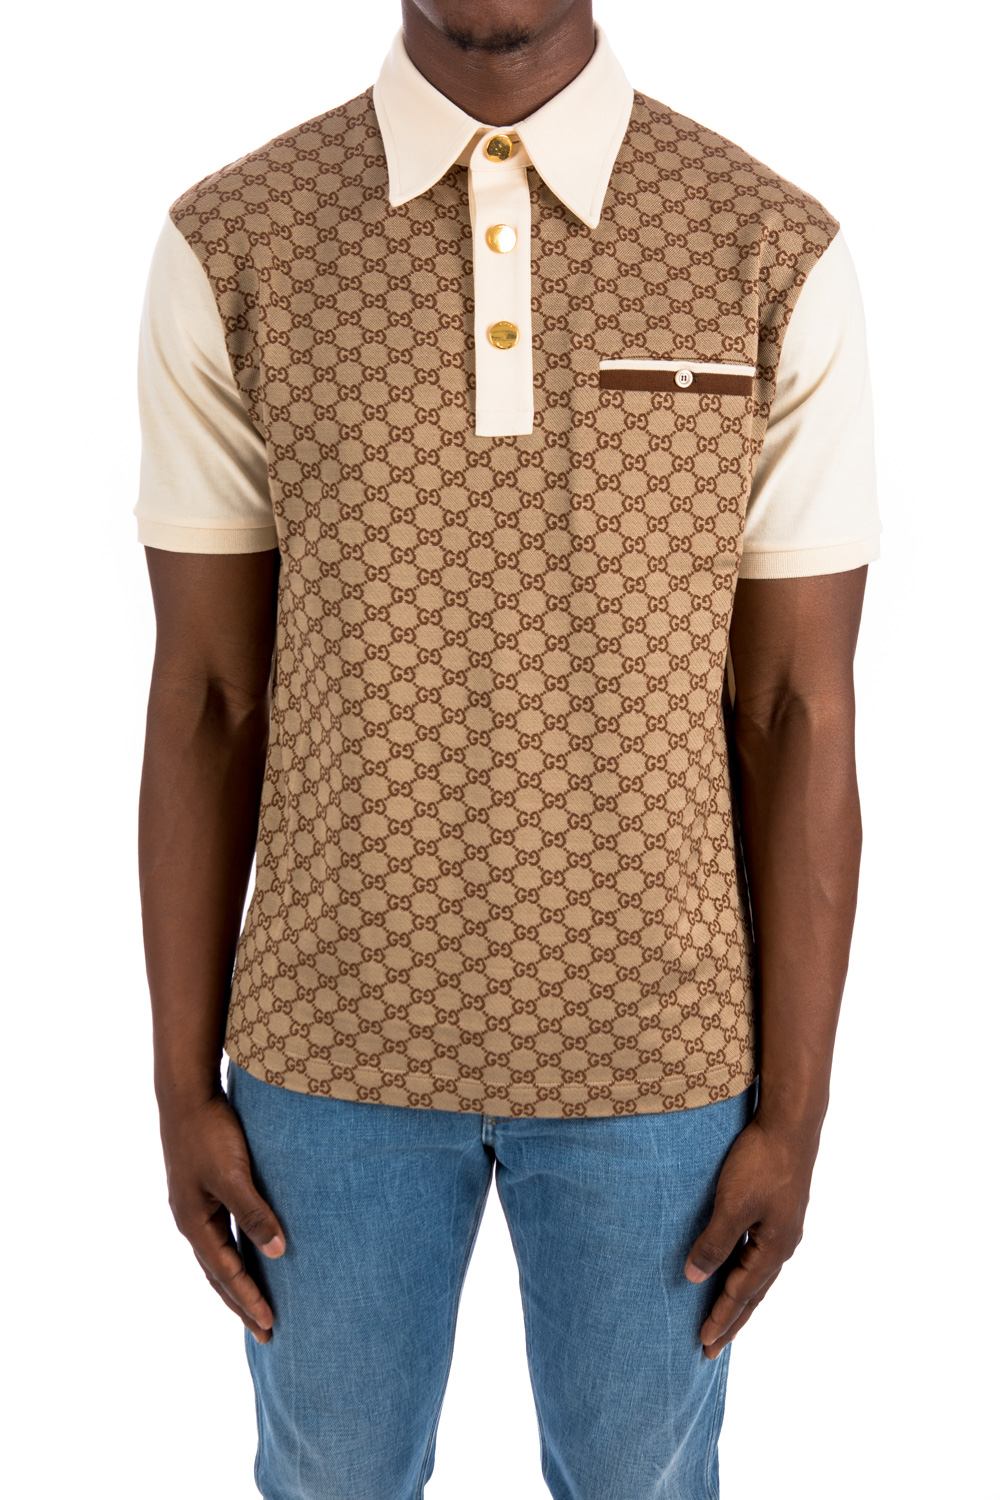 Gucci monogram-pattern Silk-Cotton Polo Shirt - Black